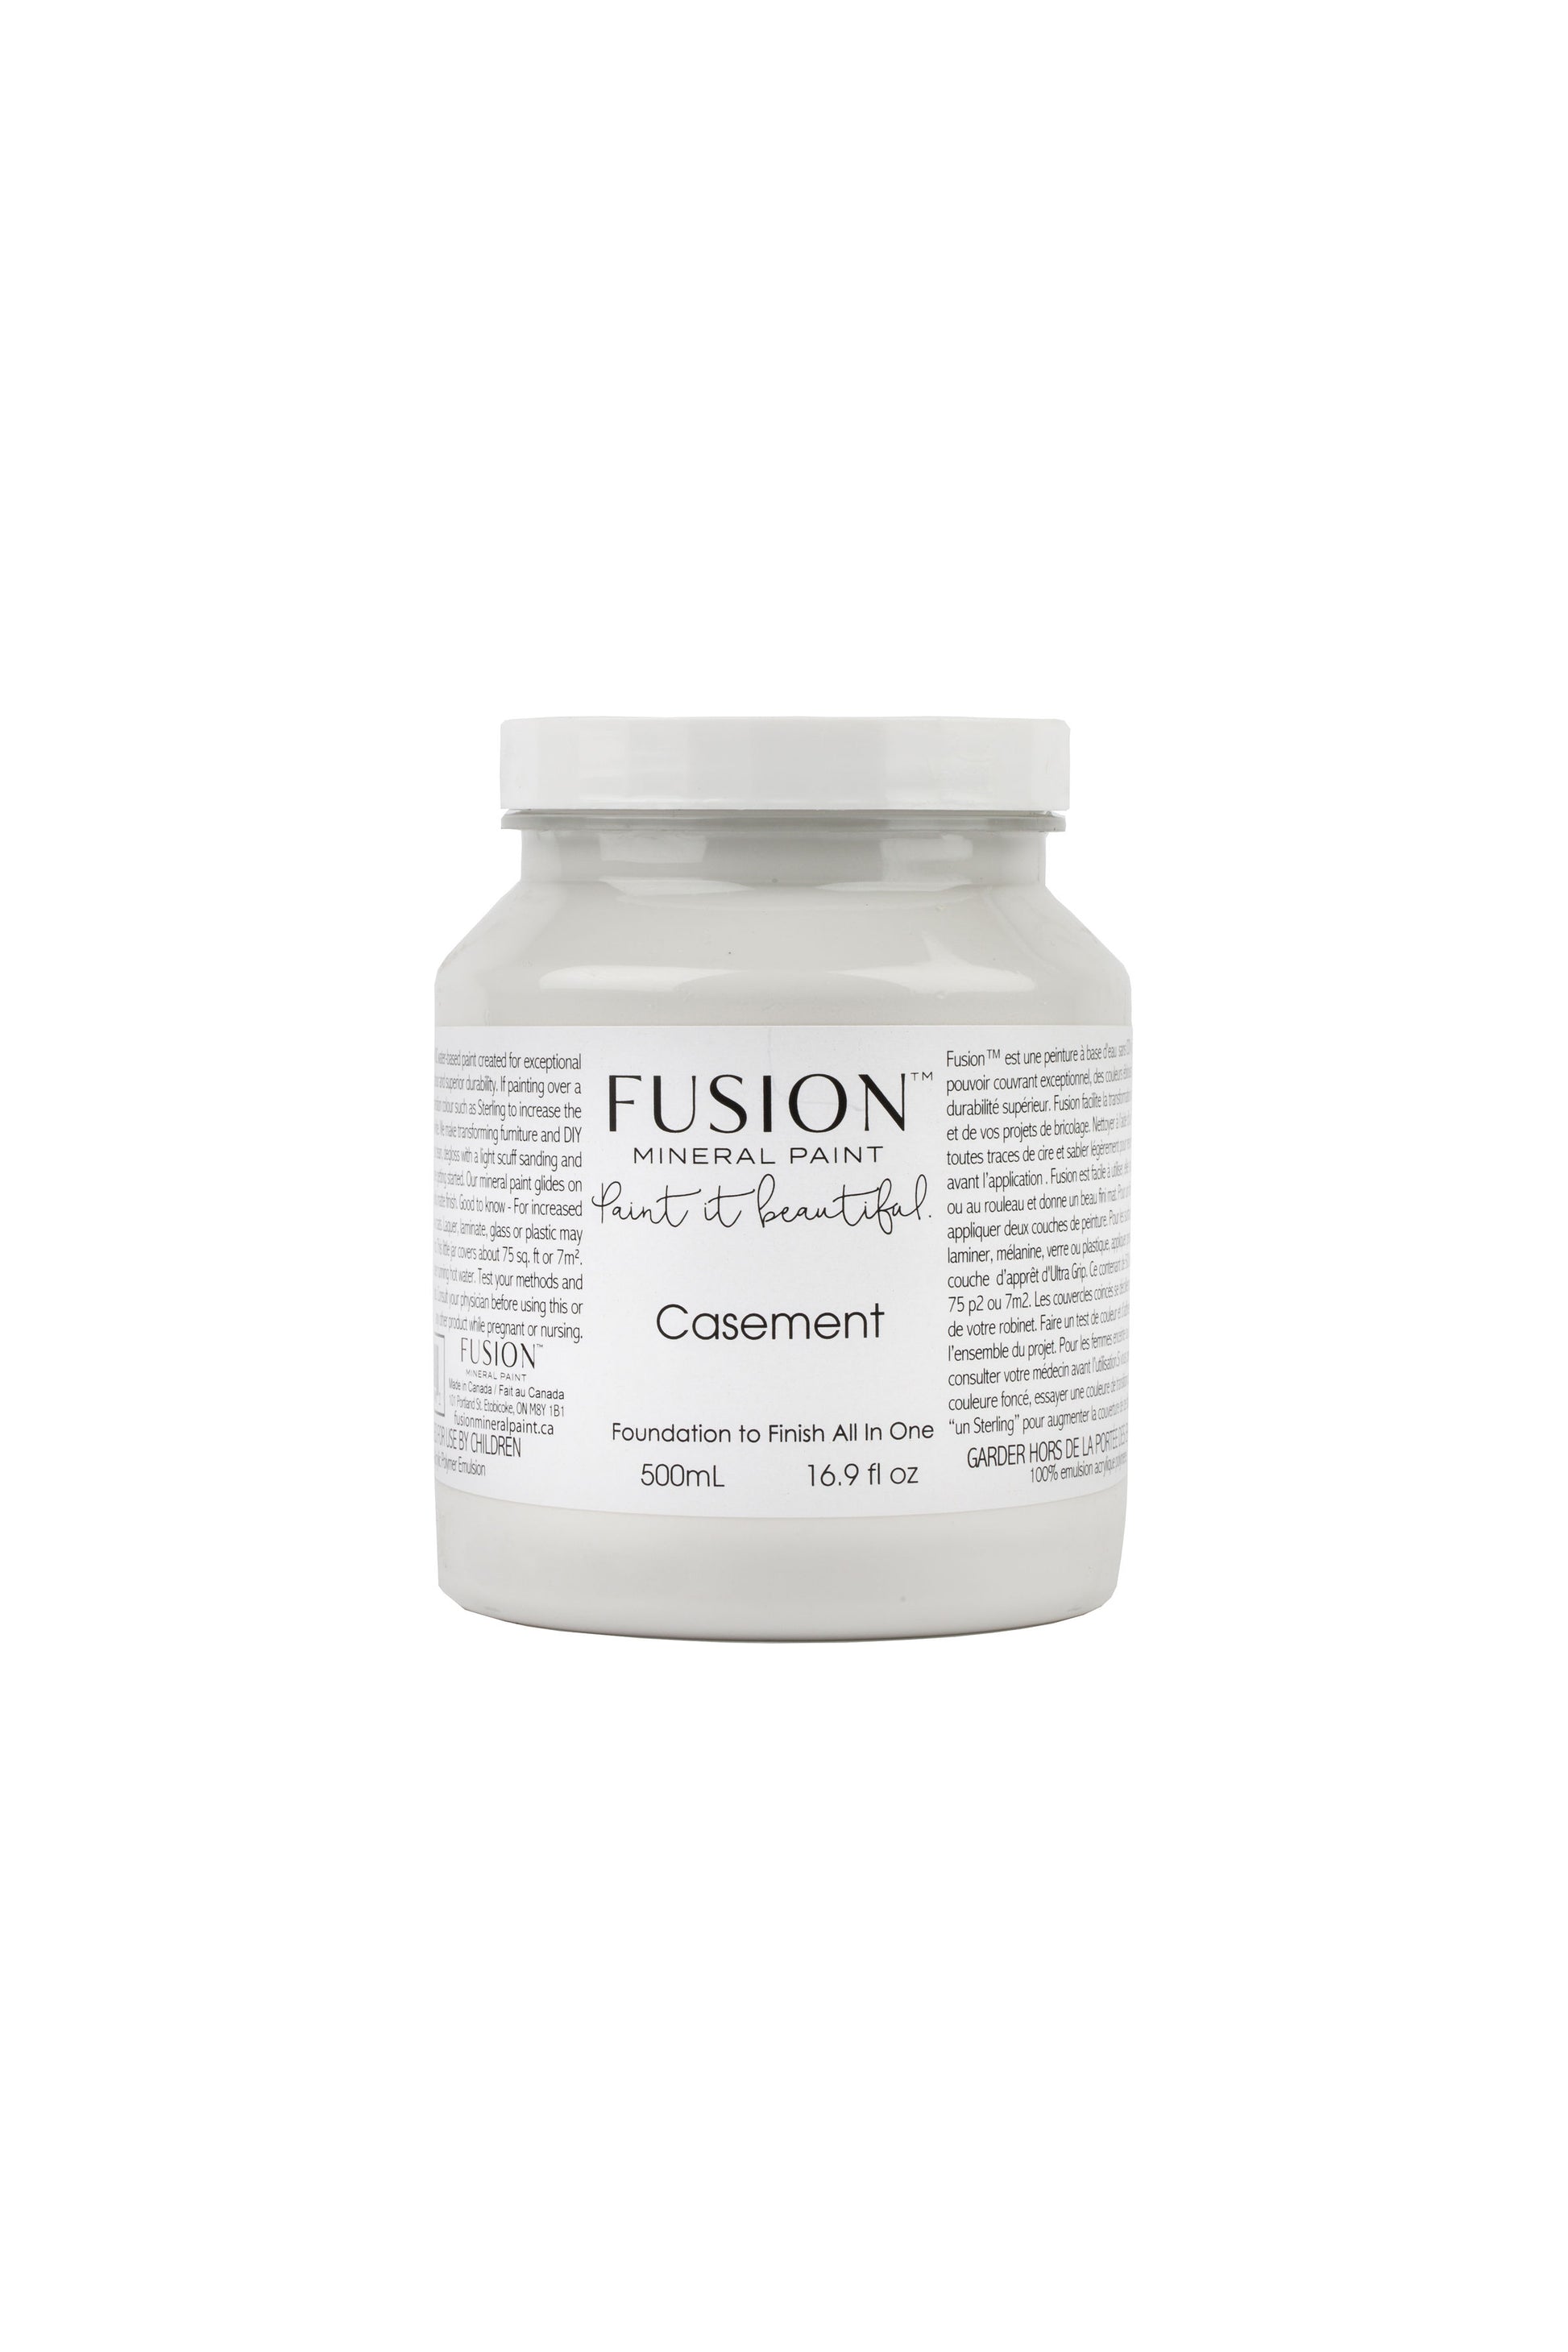 Casement Fusion Mineral Paint, Warm White Paint | 500ml Pint Size 